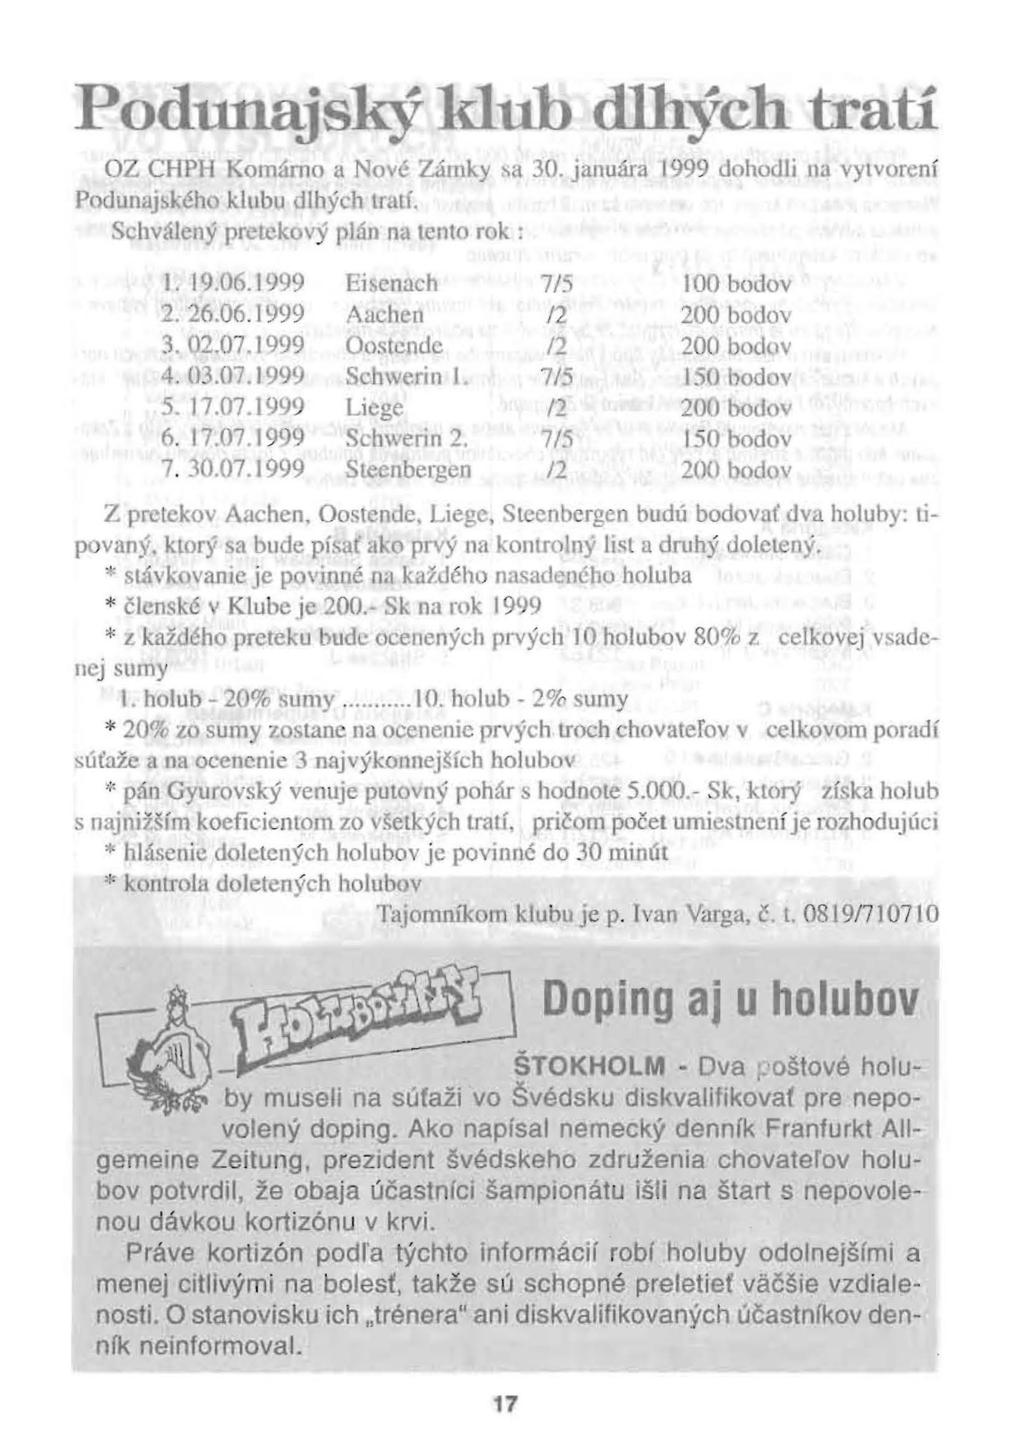 Podunajský klub dlhých tratí OZ CHPH Komárno a Nové Zámky sa 30. januára 1999 dohodli na vylvorení Podunajb~éh klubu dlhých tratí. chválený prdck vý plán na tento rok: J. 19.06.